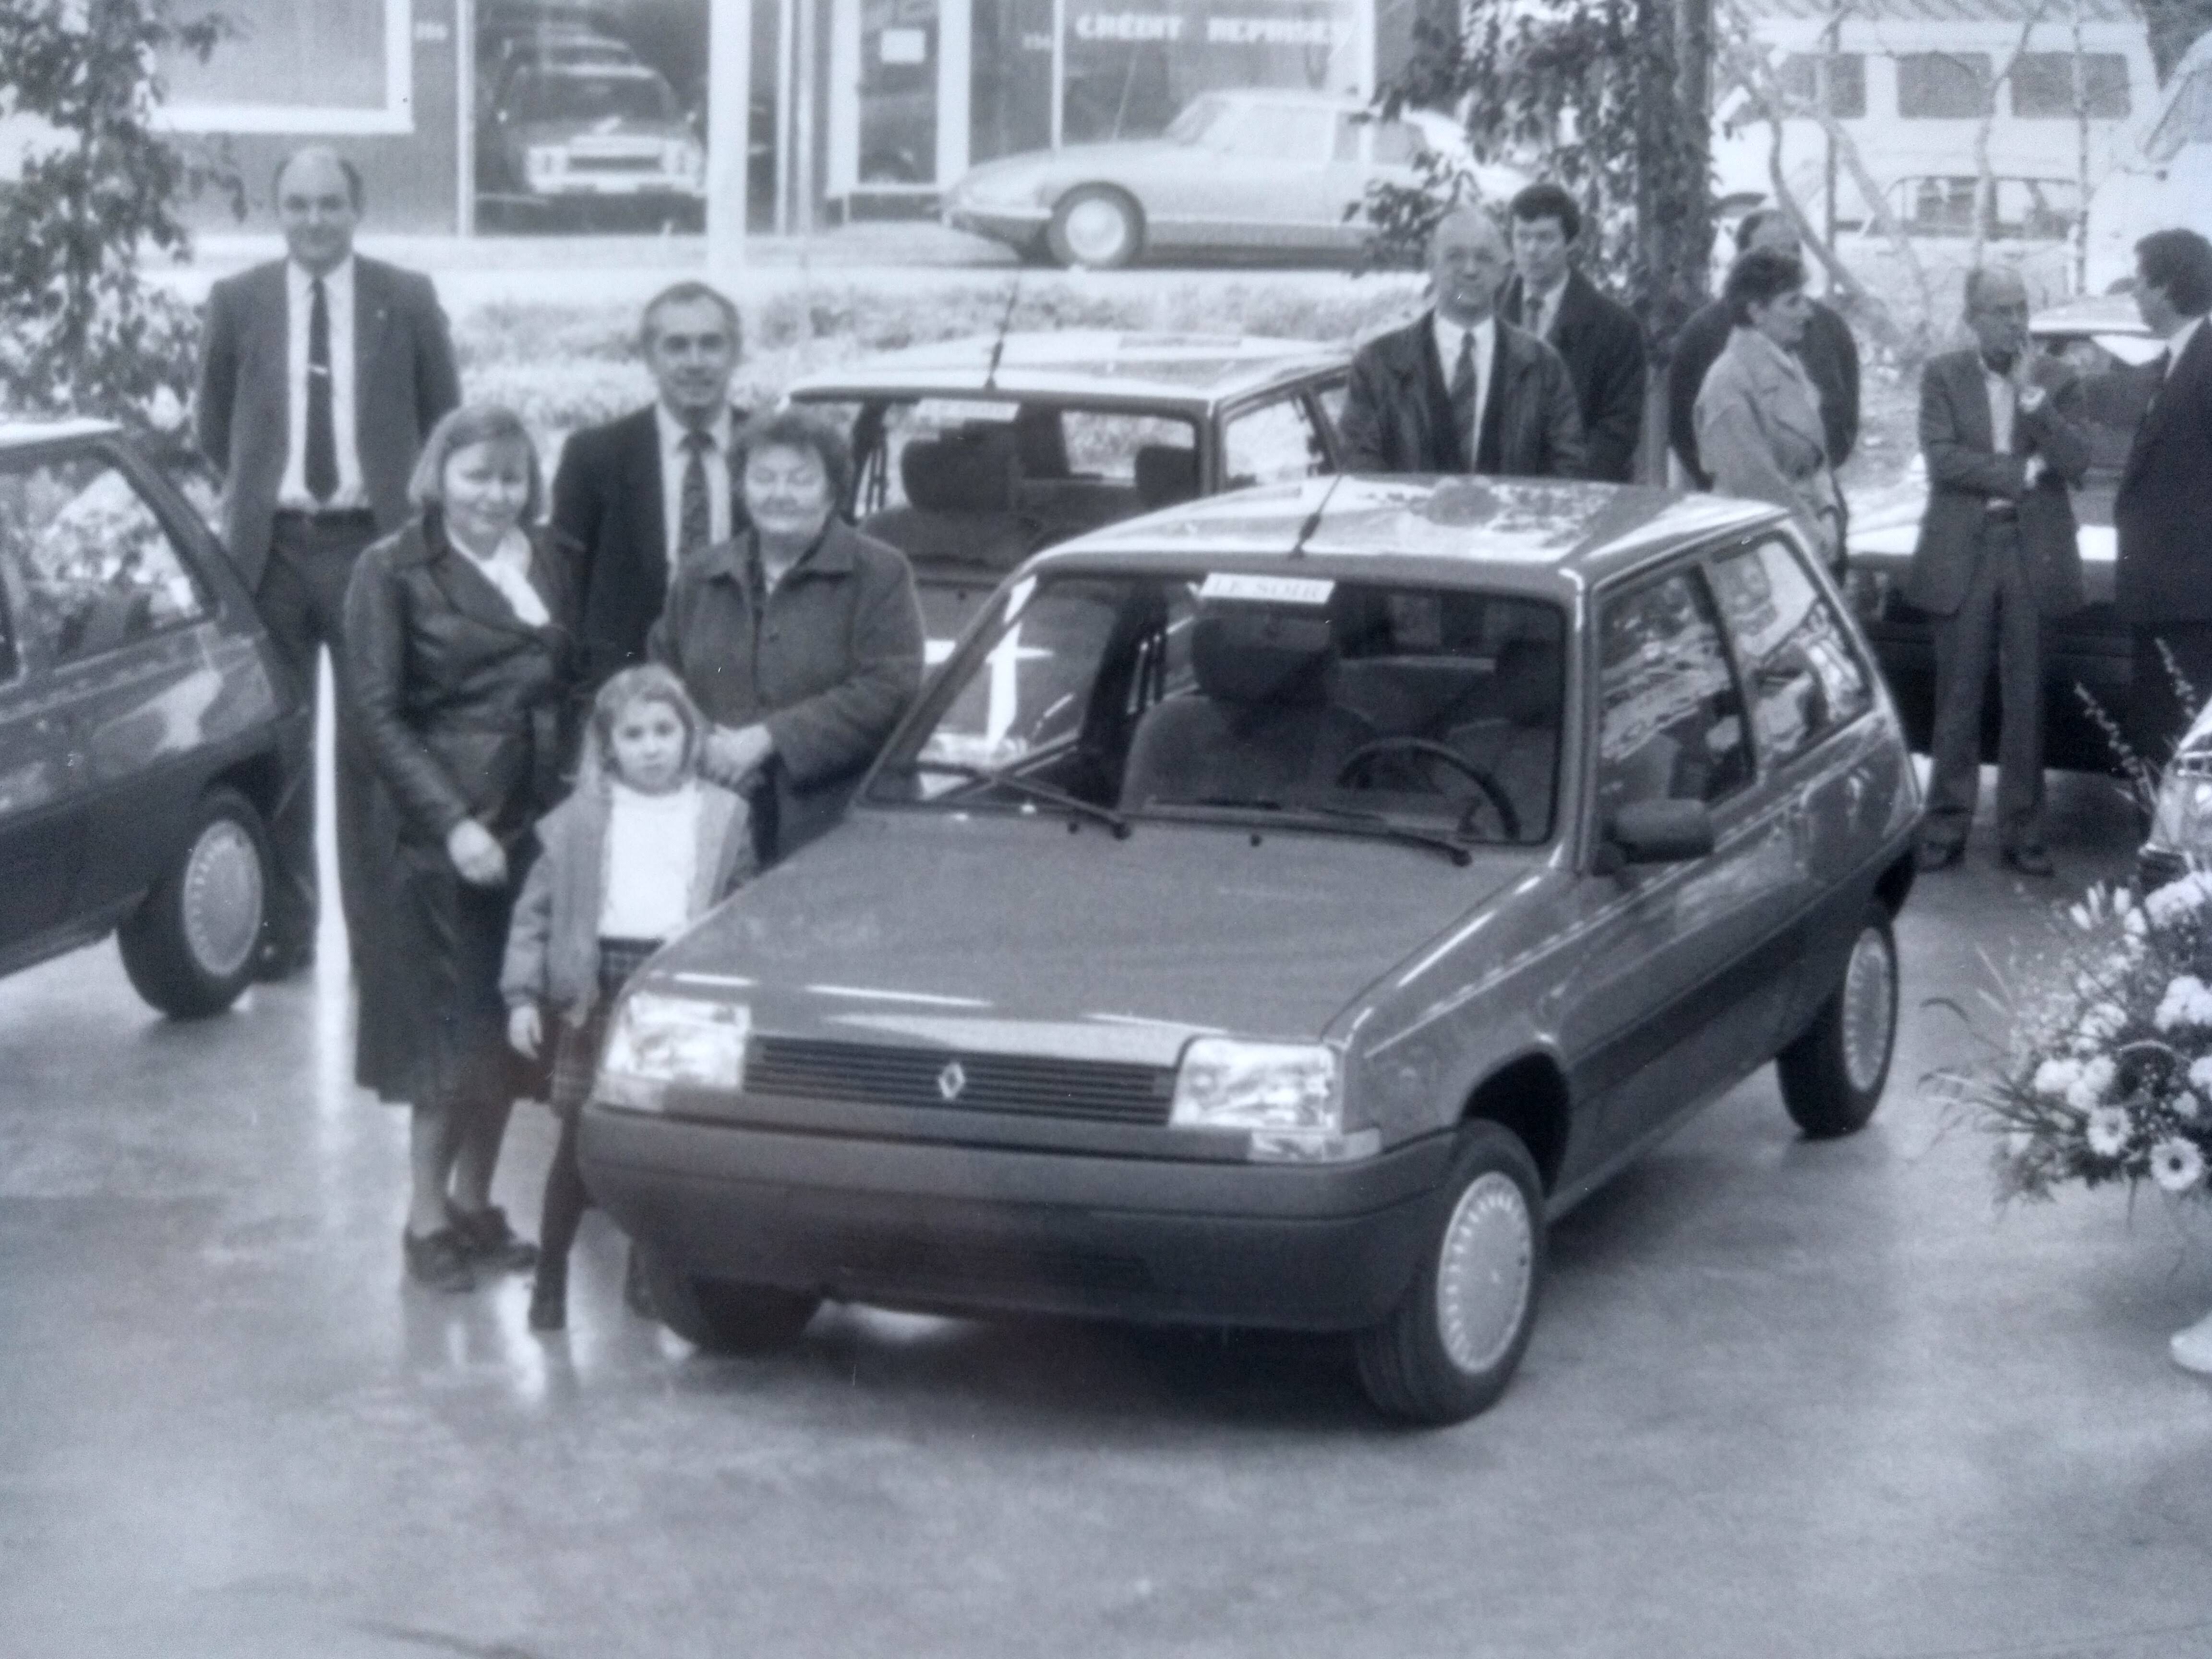 La Renault Clio devient voiture de collection - Eplaque